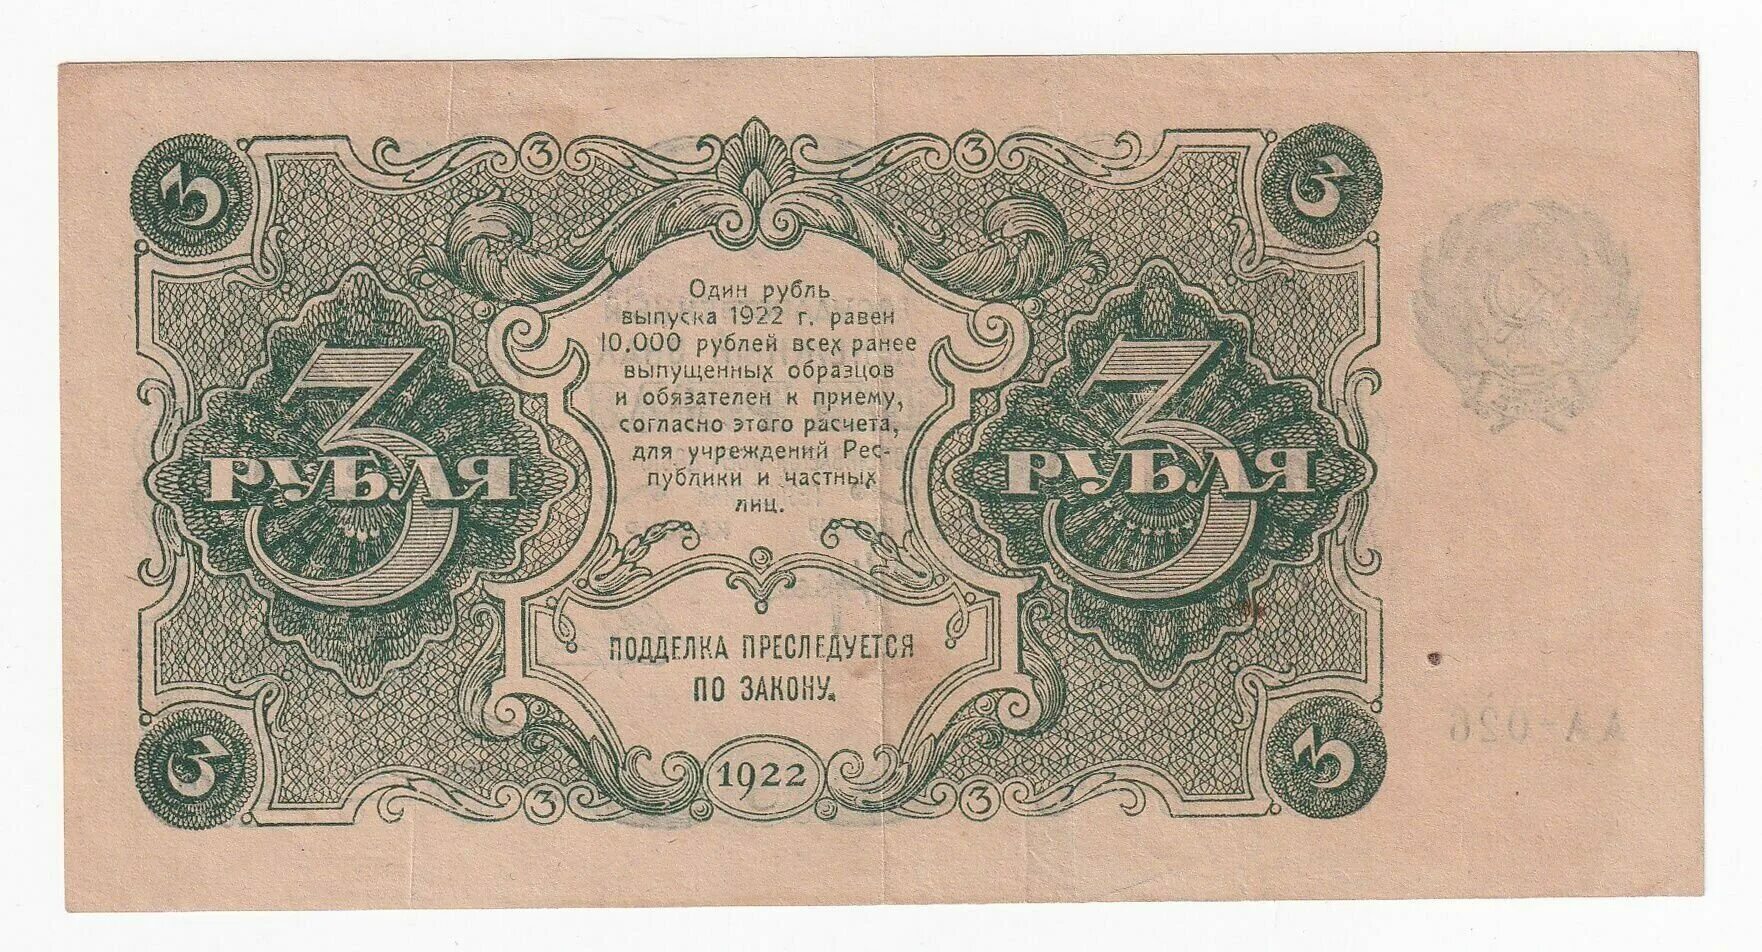 1 2 3 рубля. Банкнота 3 рубля 1922 года. 10000 Рублей 1922 года. 5 Рублей 1922 года. Денежный знак 3 рубля 1922.